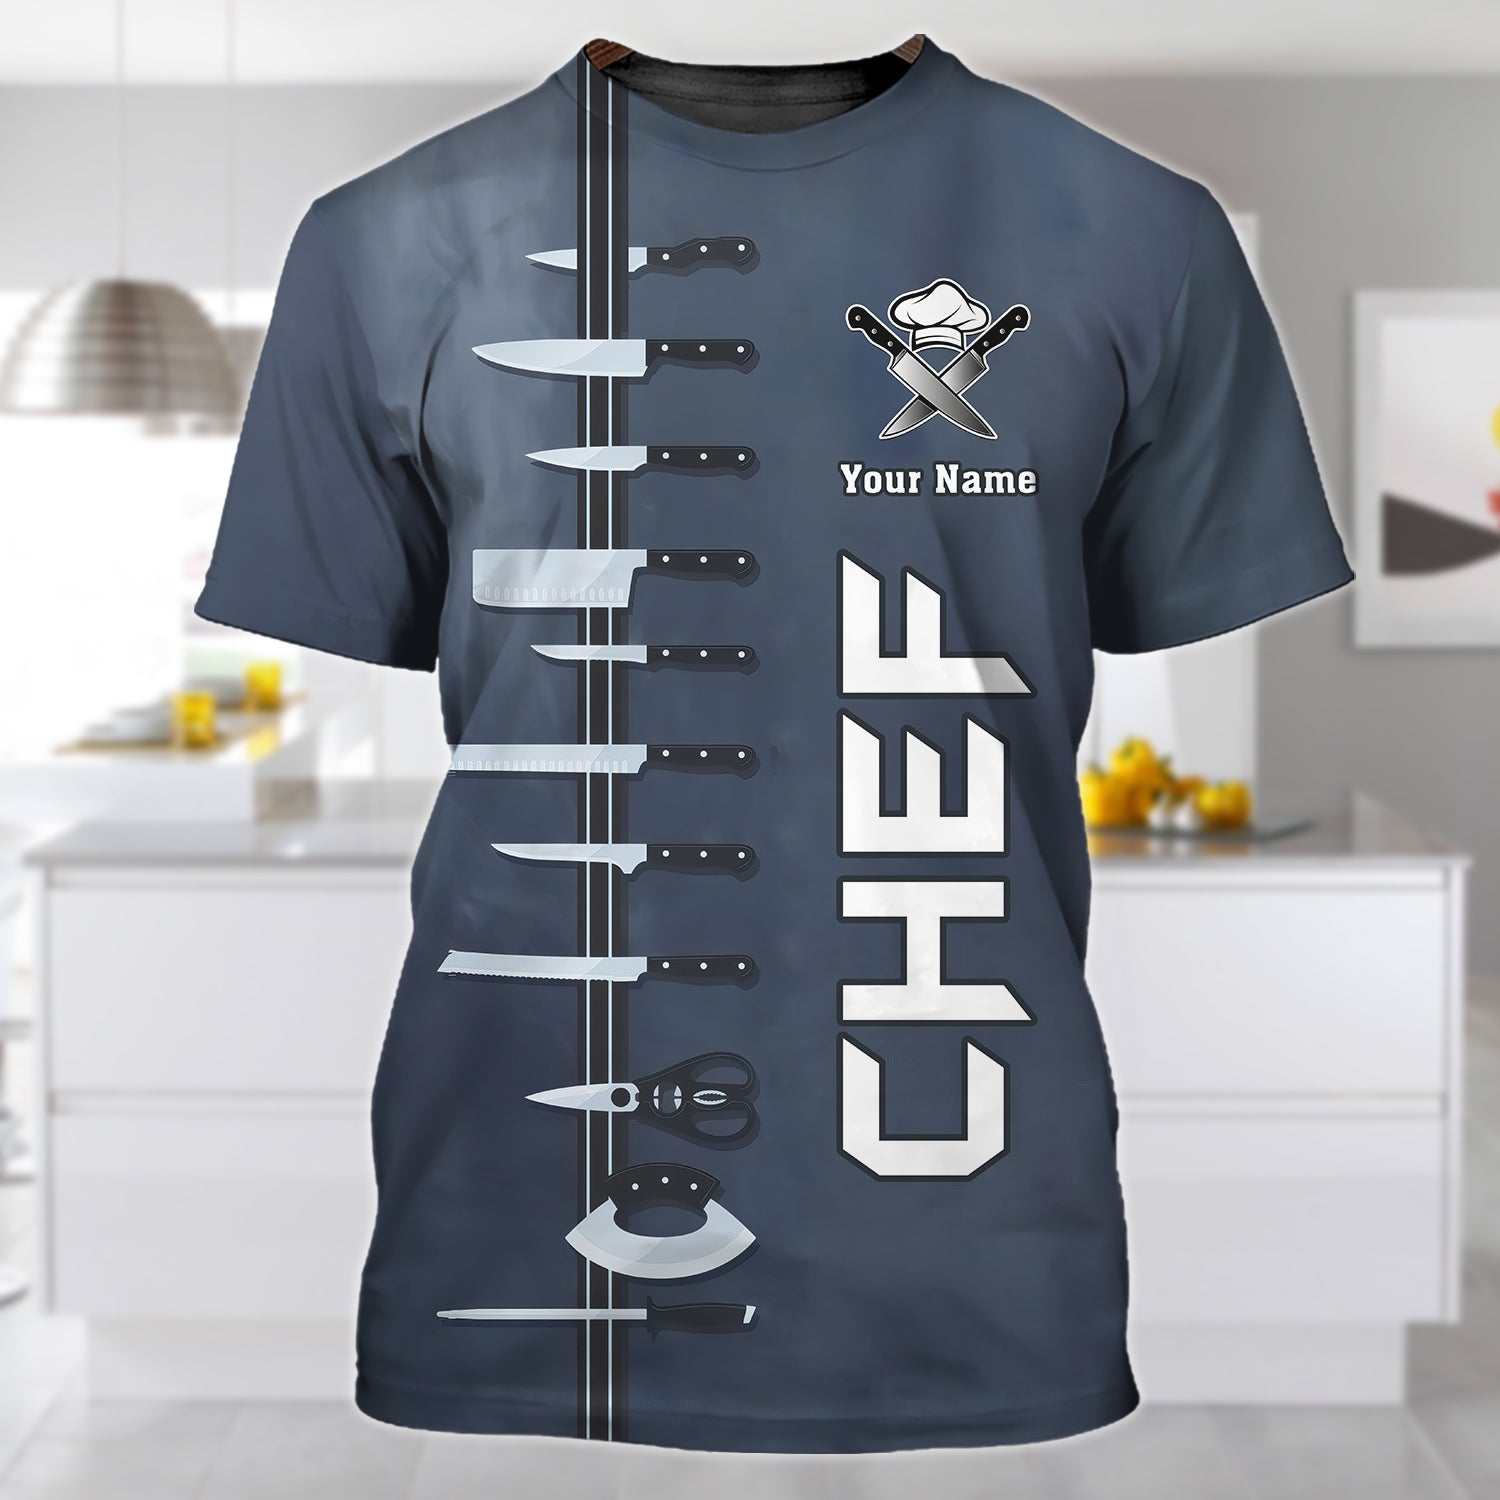 CHEF - Personalized Name 3D Tshirt 07 - RINC98